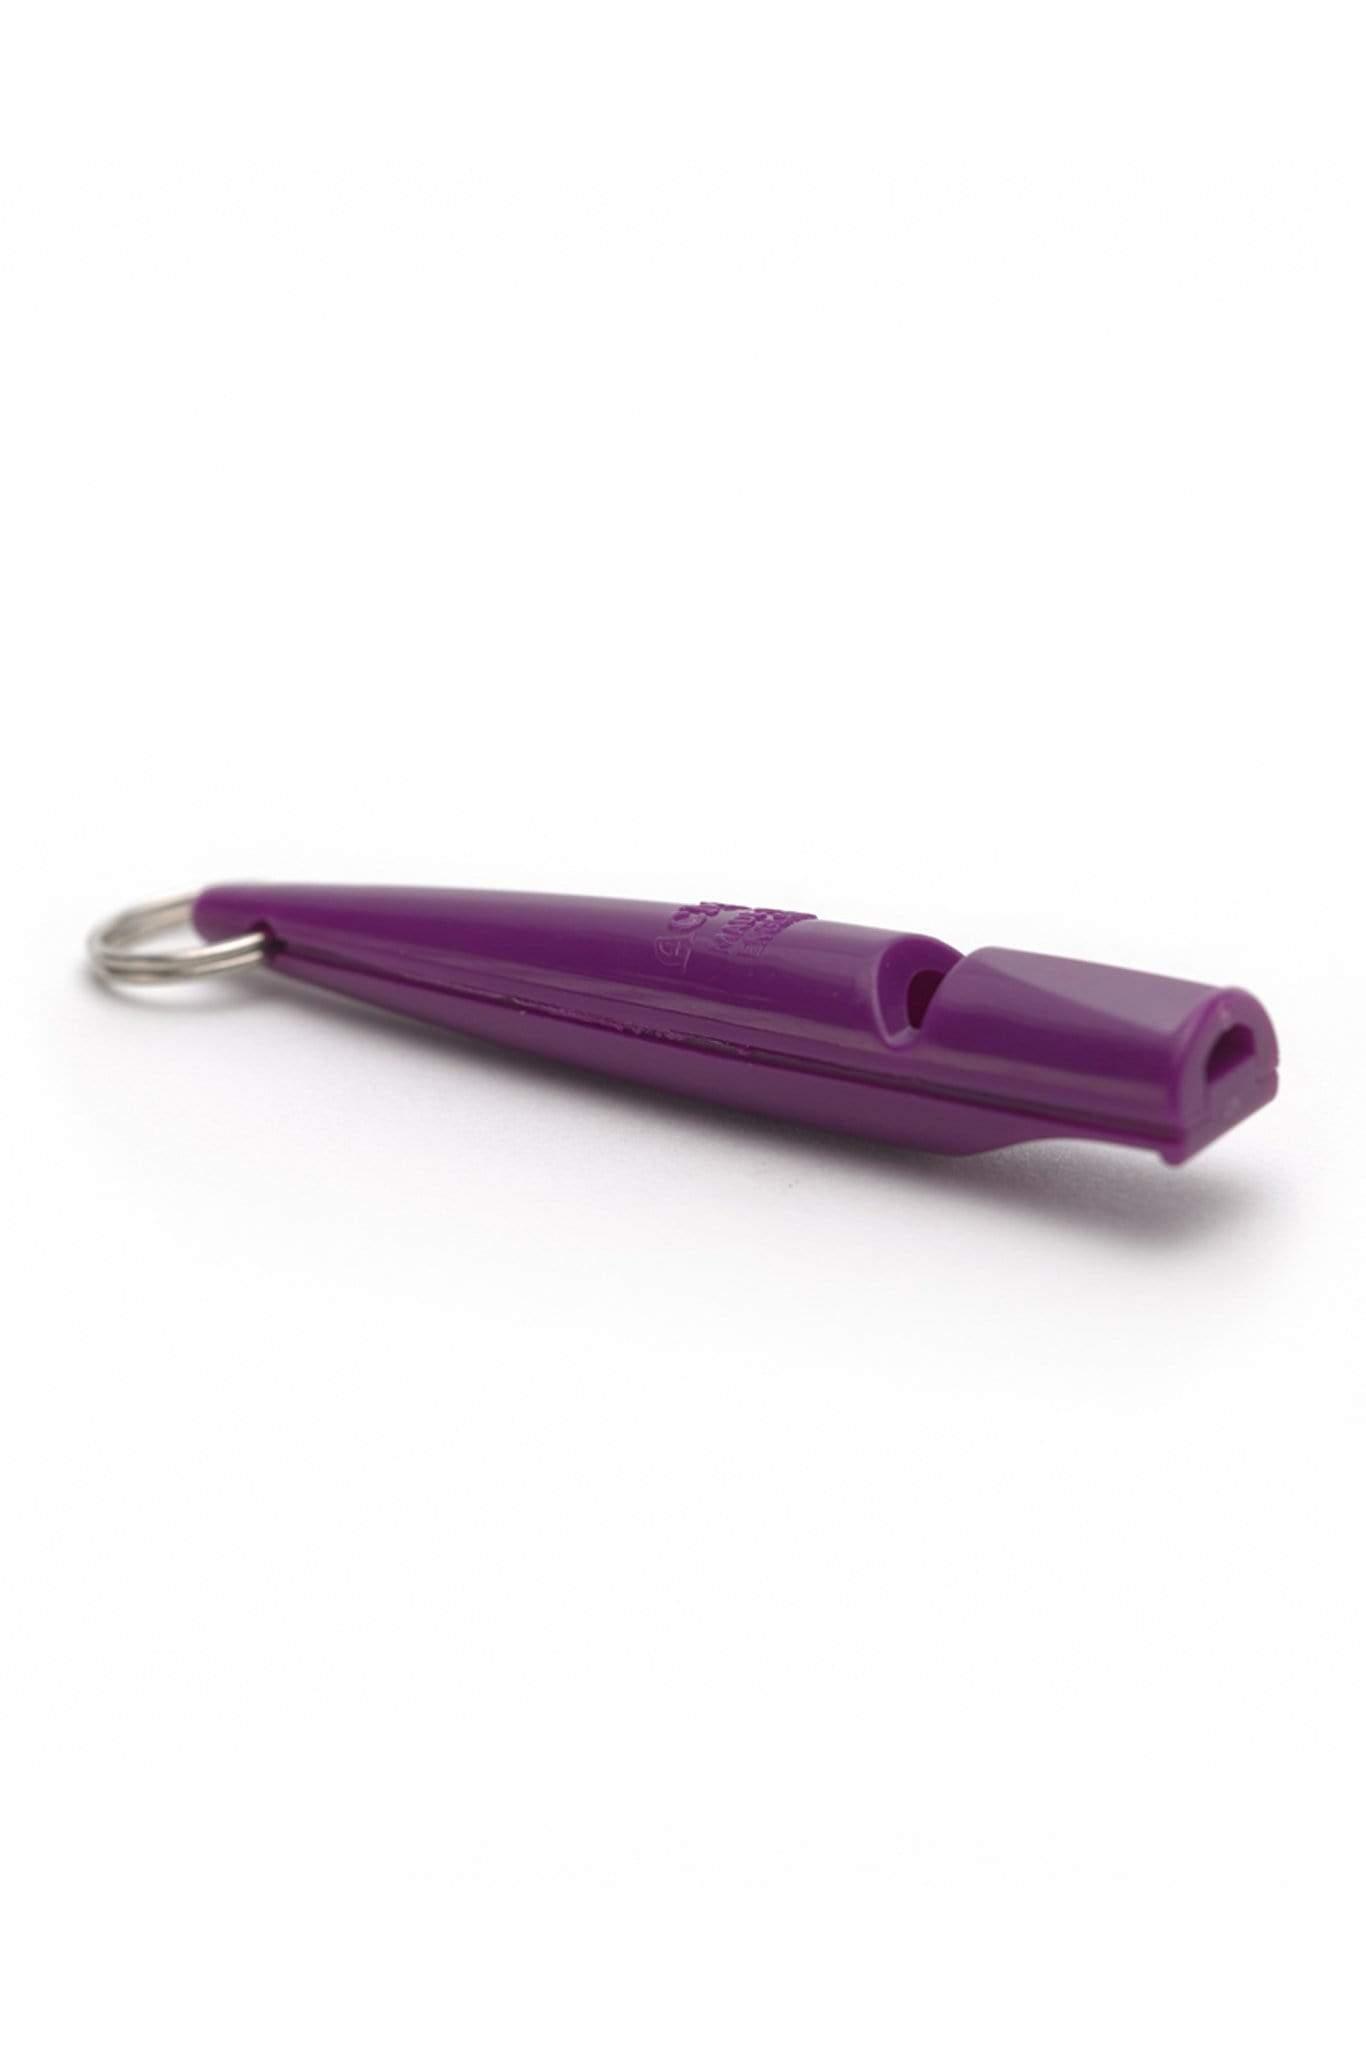 ACME Whistles &amp; Lanyards Purple ACME Dog Training Whistle 211.5 - Purple